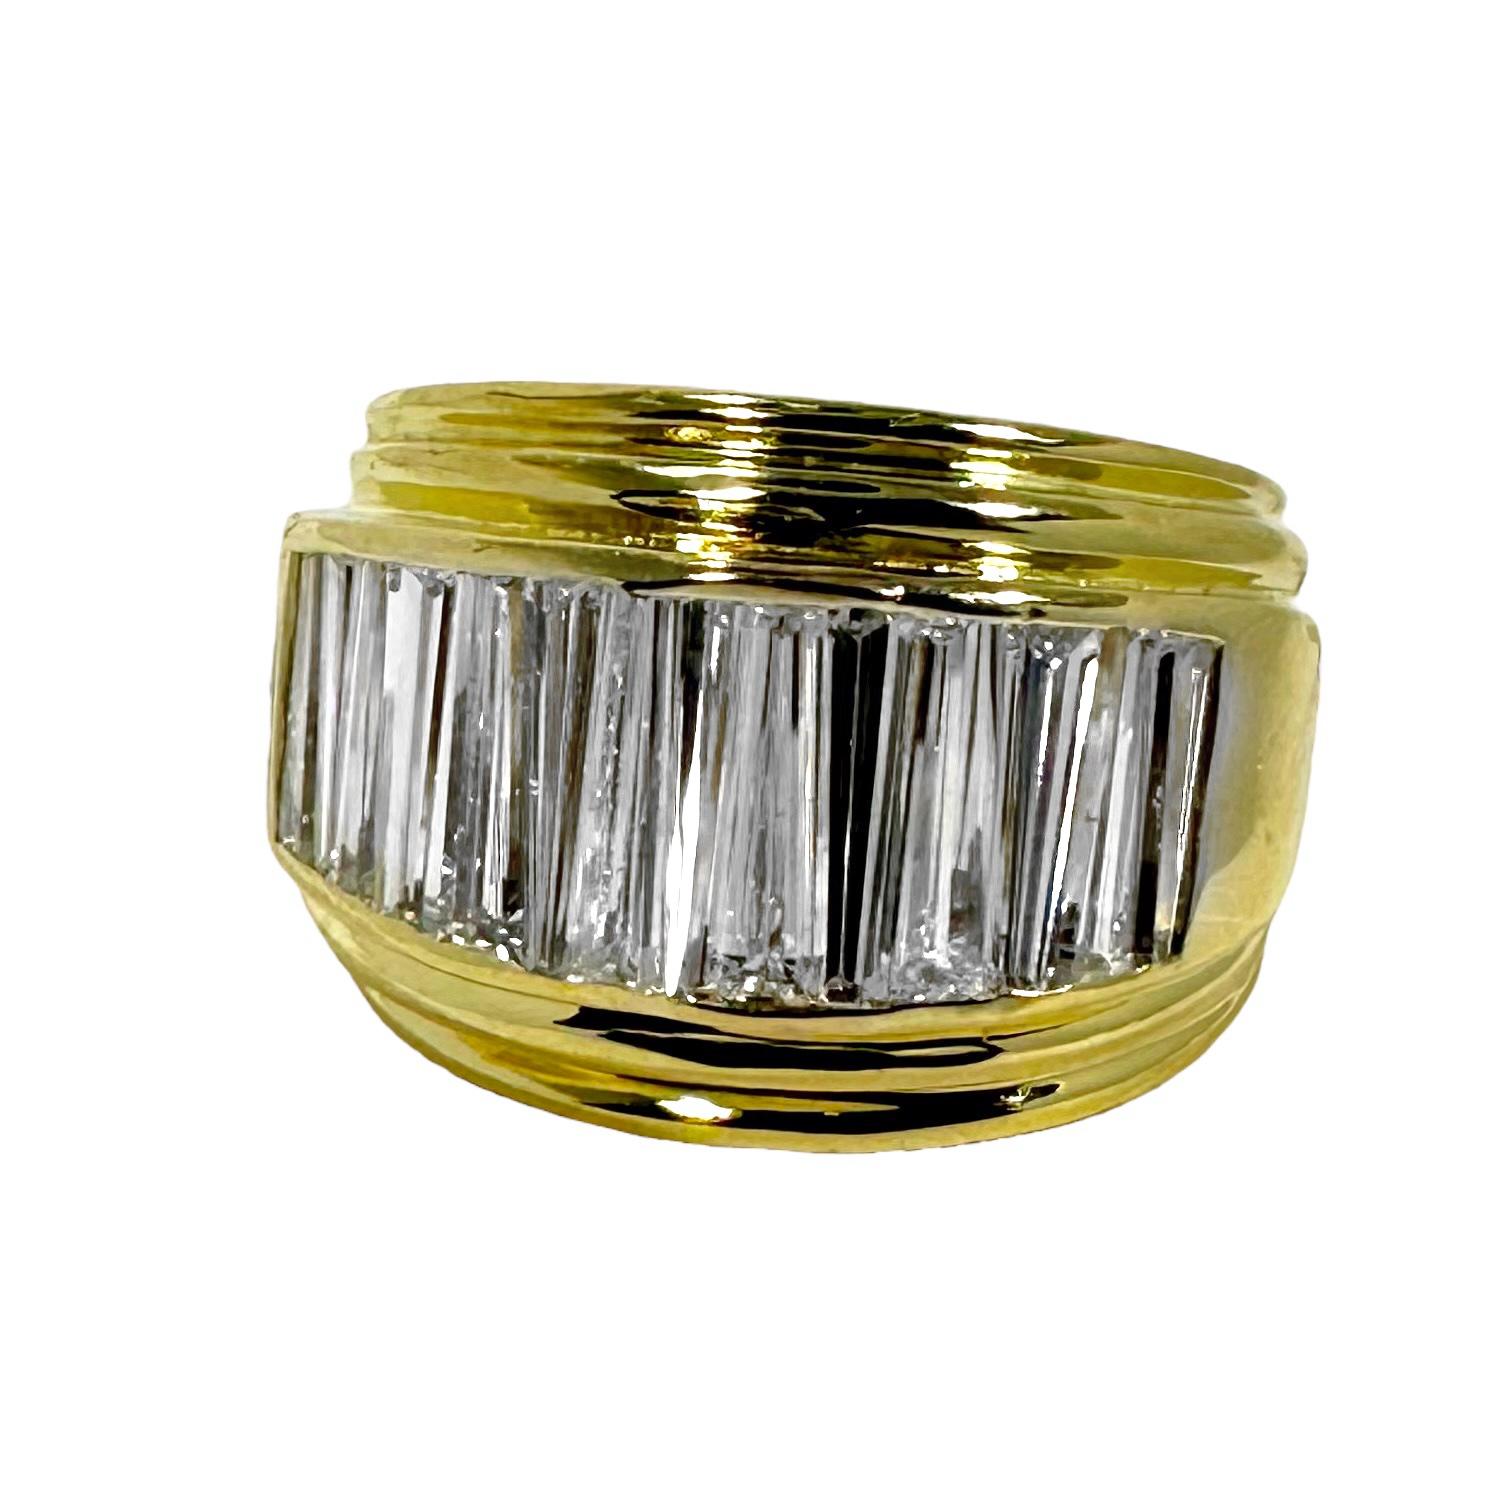 Cet impressionnant bracelet européen en or jaune 18 carats est serti sur la moitié supérieure de quatorze diamants baguettes effilés.  Le poids total approximatif des diamants est de 2,15ct de couleur H et de pureté VS1. Des arêtes architecturées